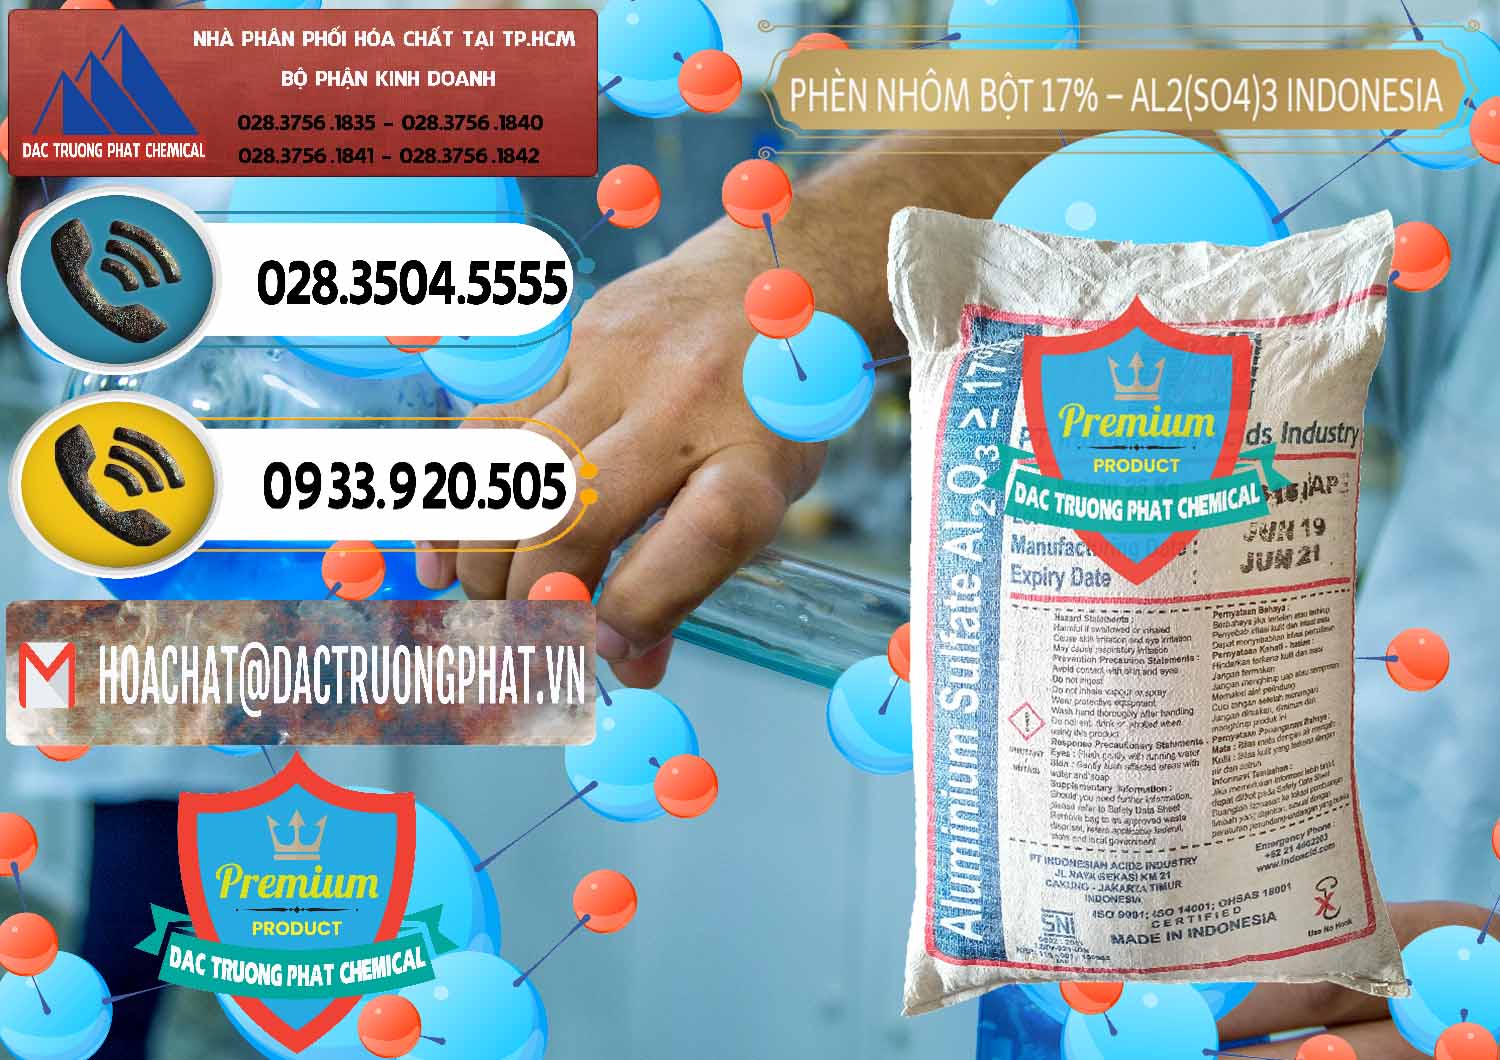 Công ty bán ( phân phối ) Phèn Nhôm Bột - Al2(SO4)3 17% bao 25kg Indonesia - 0114 - Cty cung ứng - phân phối hóa chất tại TP.HCM - hoachatdetnhuom.vn